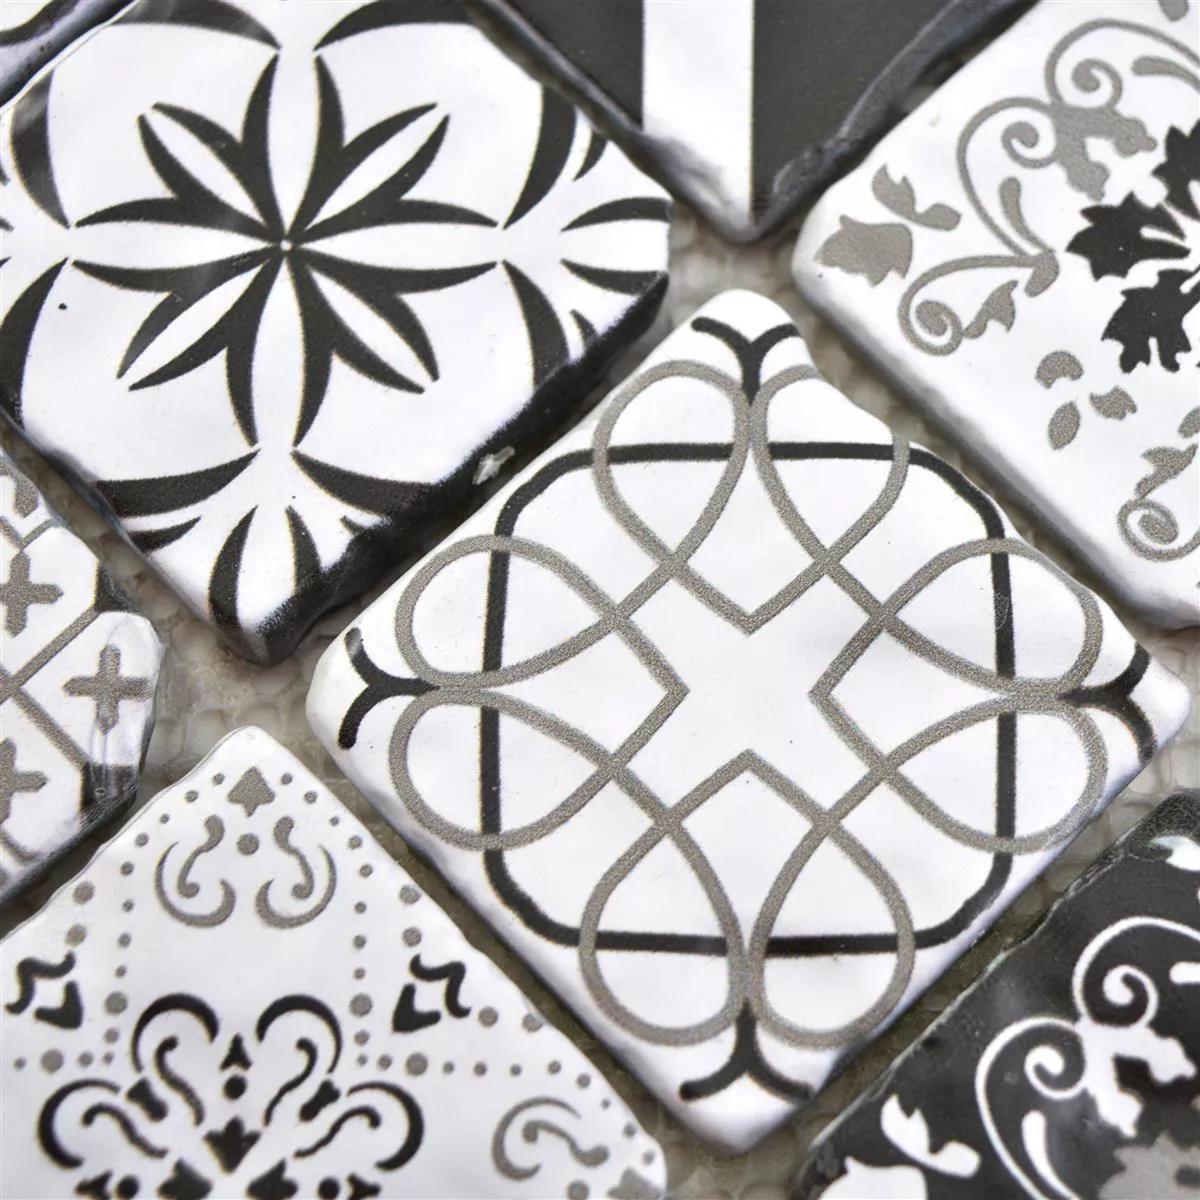 Glass Mosaic Tiles Starlite Retro Black White 48